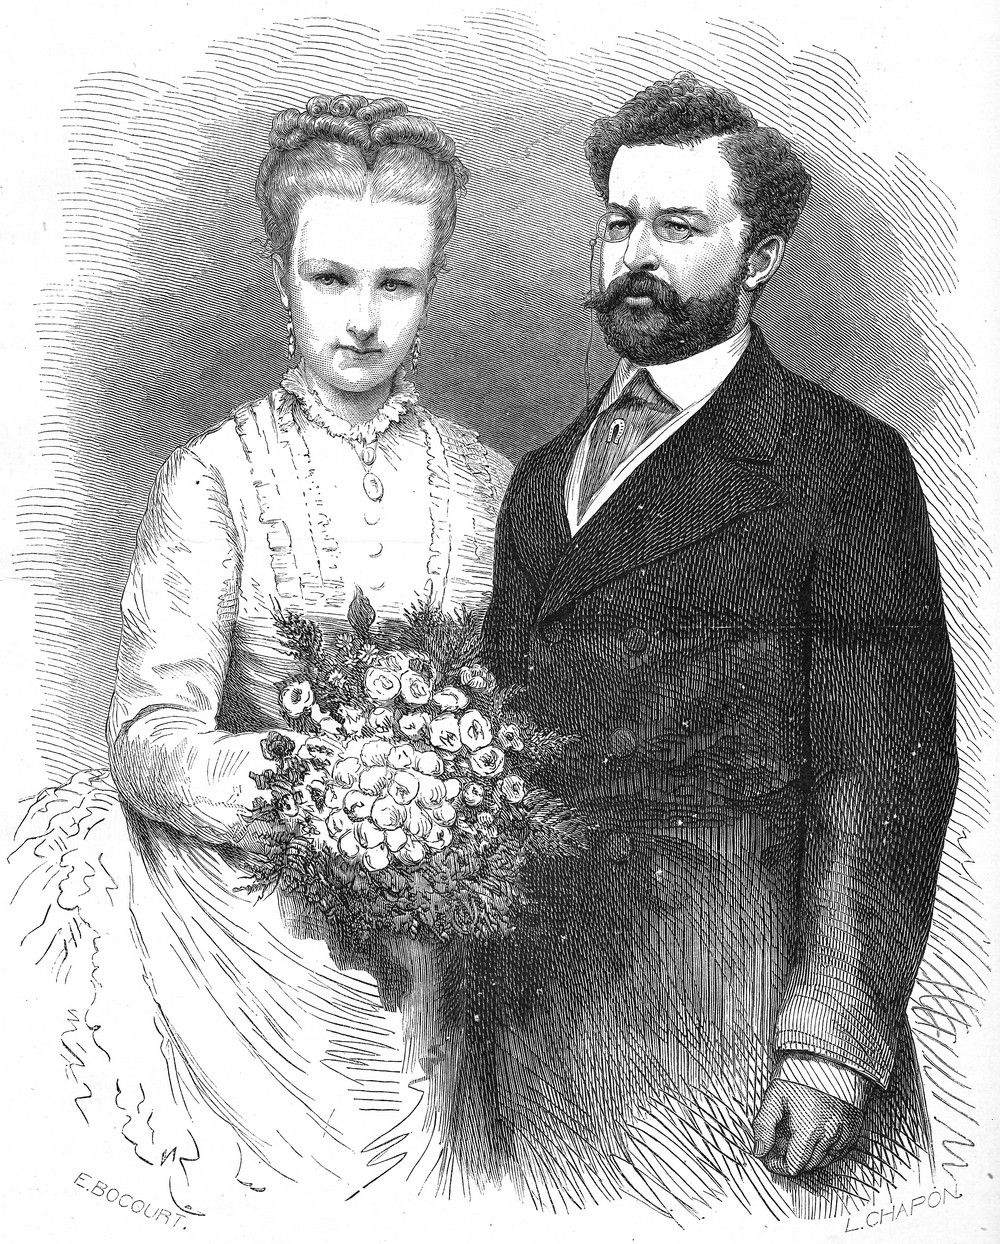 Niedobrane małżeństwo Luizy i Filipa źle się zaczęło, a potem było jeszcze gorzej. Akwaforta na podstawie zdjęcie ślubnego z 1875 roku (projekt: Etienne Bocourt, wykonanie: Léon-Louis Chapon, fotografia: Géruzet Frères; domena publiczna).